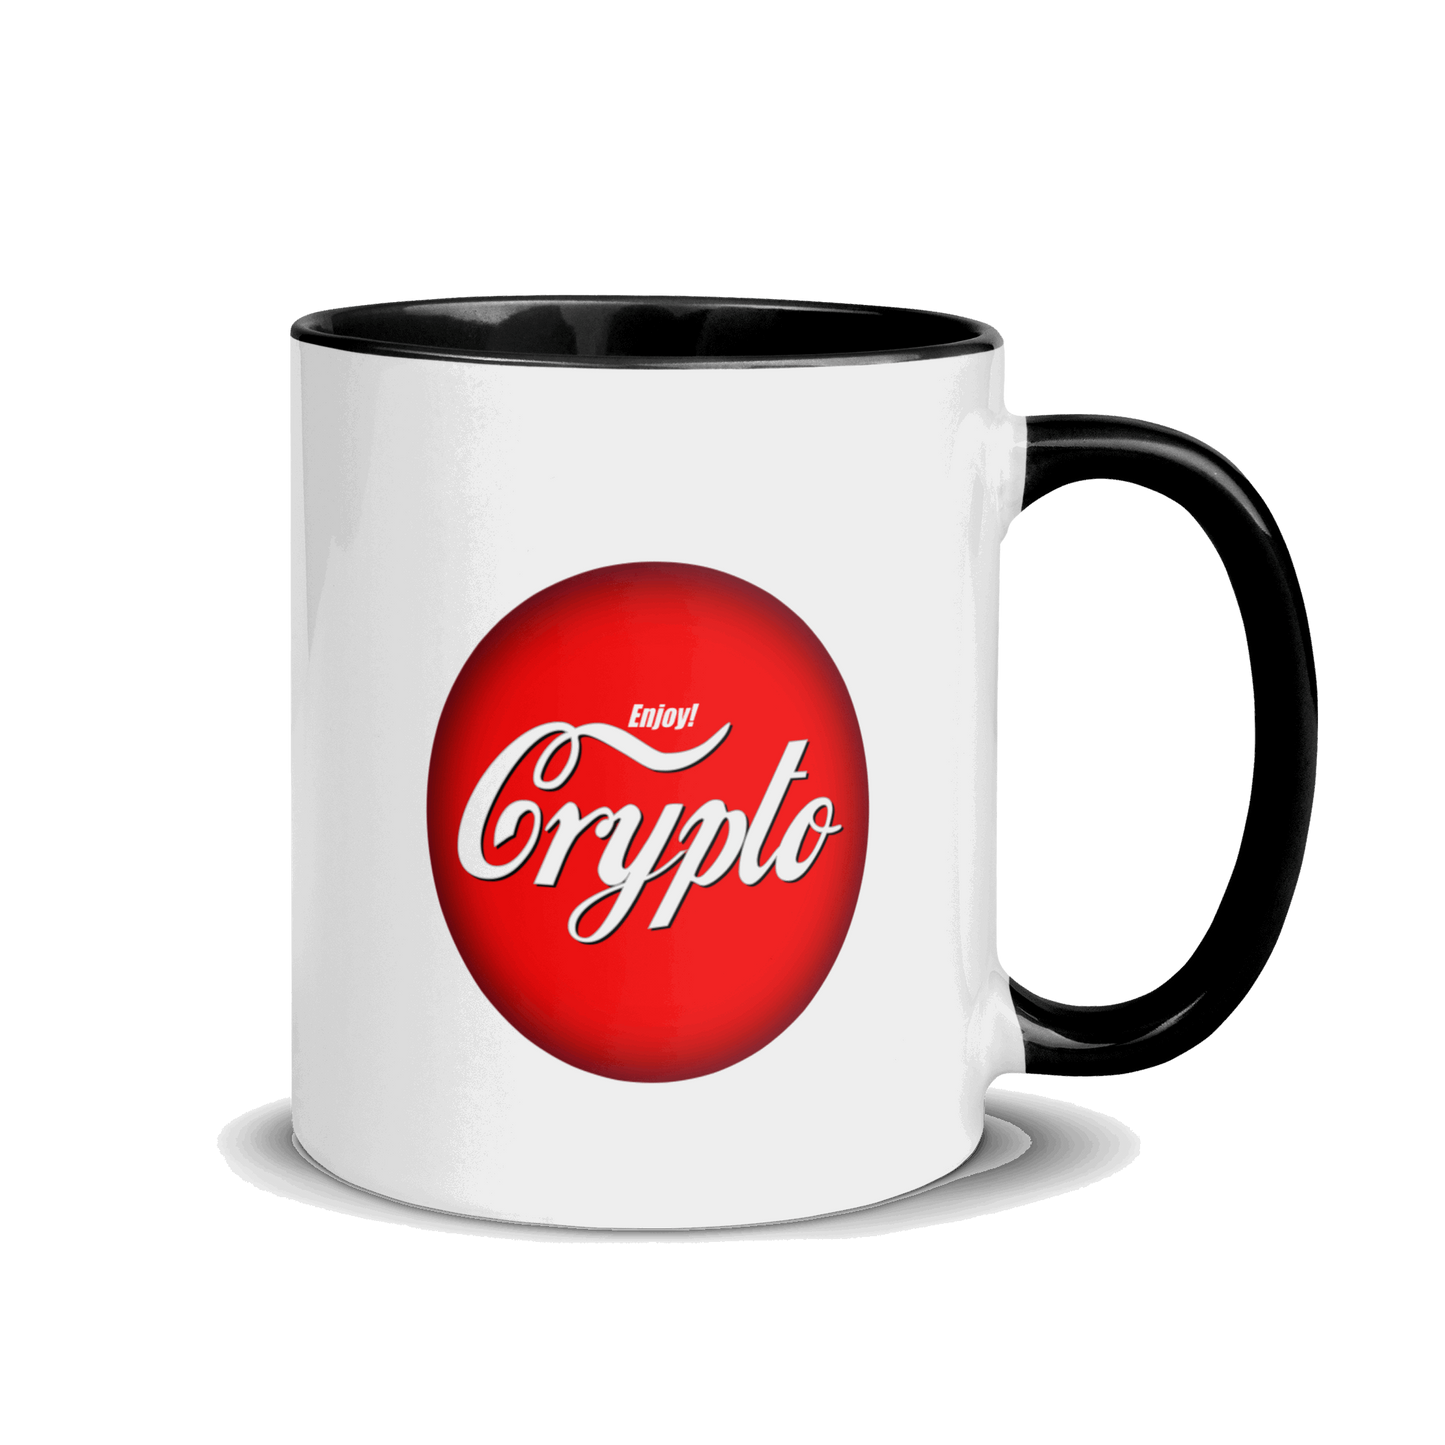 Enjoy Crypto - Mug with Color Inside